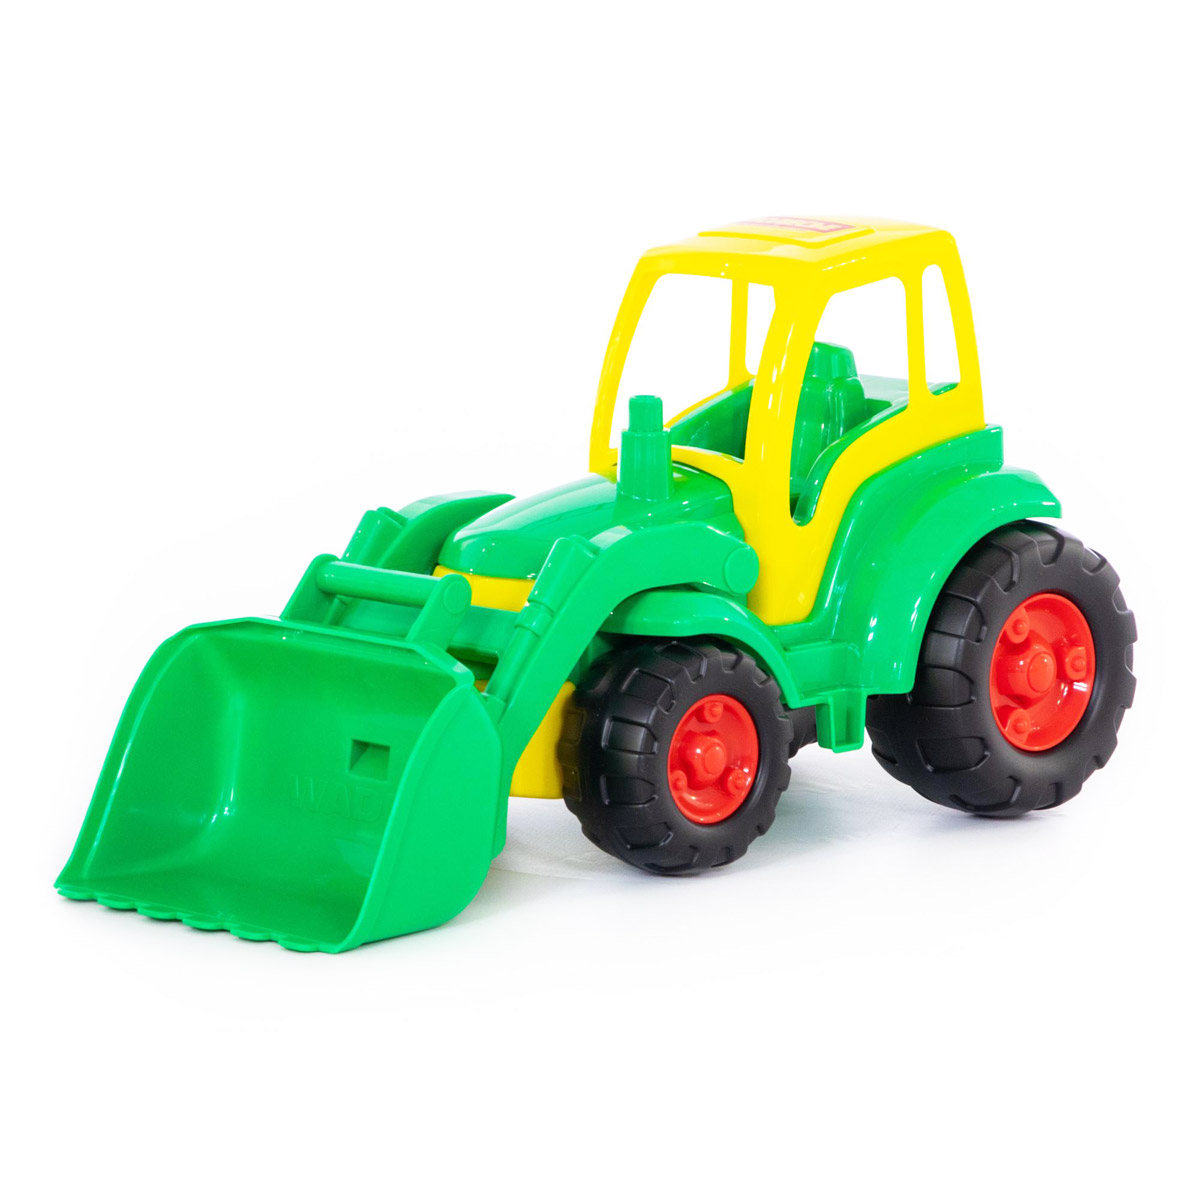 Іграшковий трактор з ковшем 'Чемпіон'